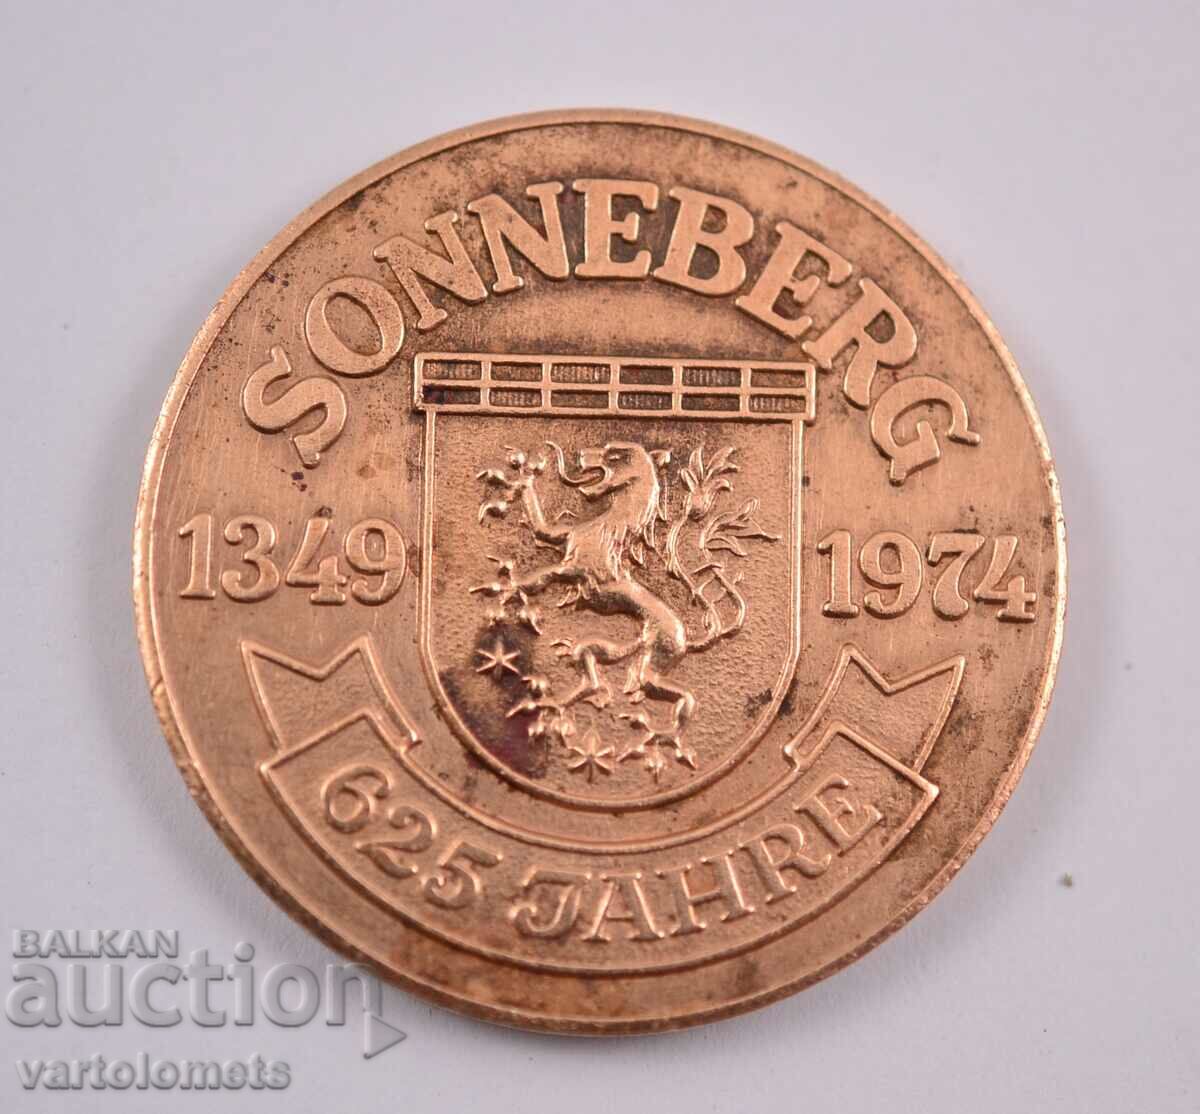 Πλακέτα - SONNEBERG 1349 - 1974